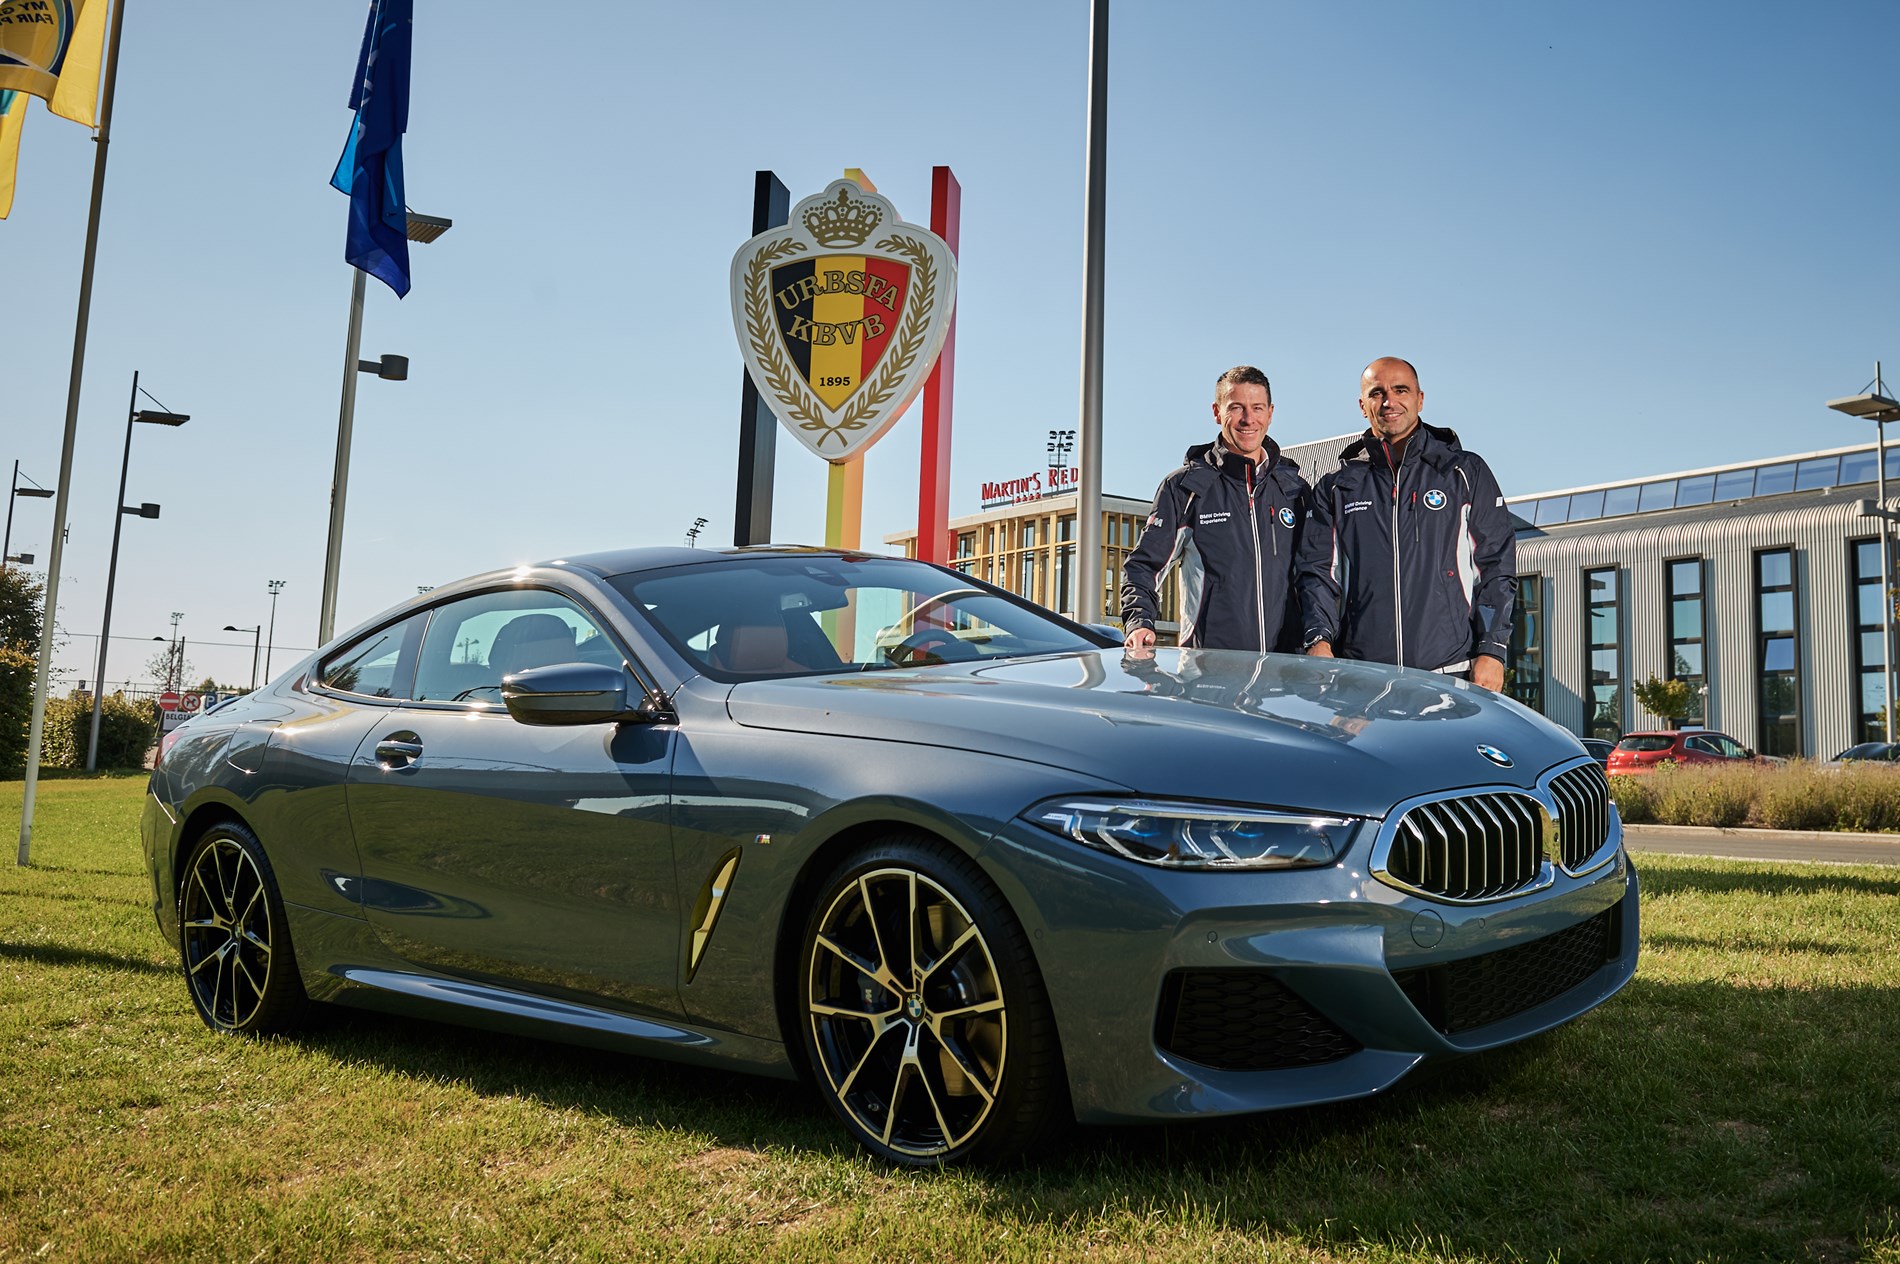 De nieuwe BMW 8 Reeks met Roberto Martinez, bondscoach van de Rode Duivels, én de BMW 507 van Elvis Presley worden de blikvangers van de Zoute Grand Prix 2018.